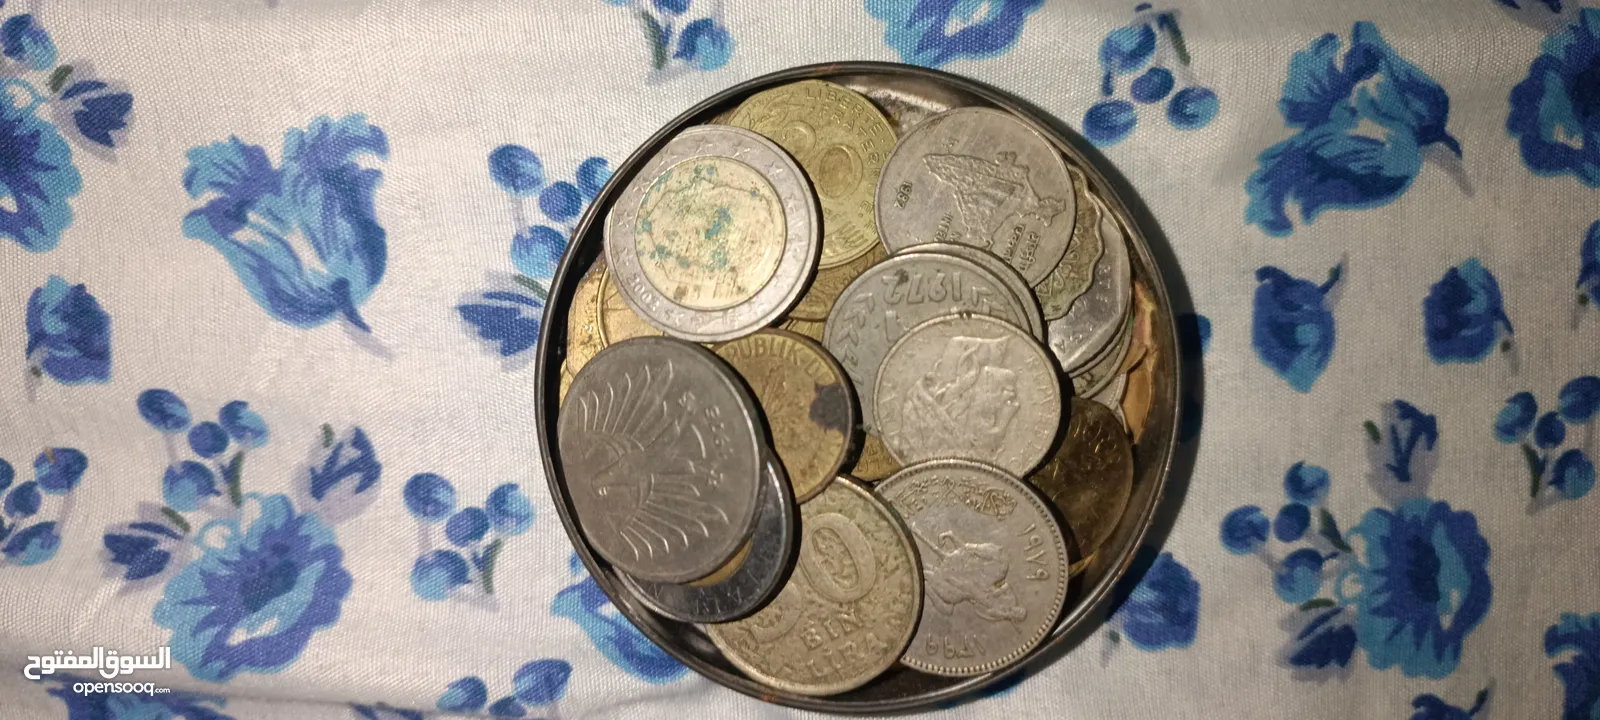 قطع نقدية قديمة